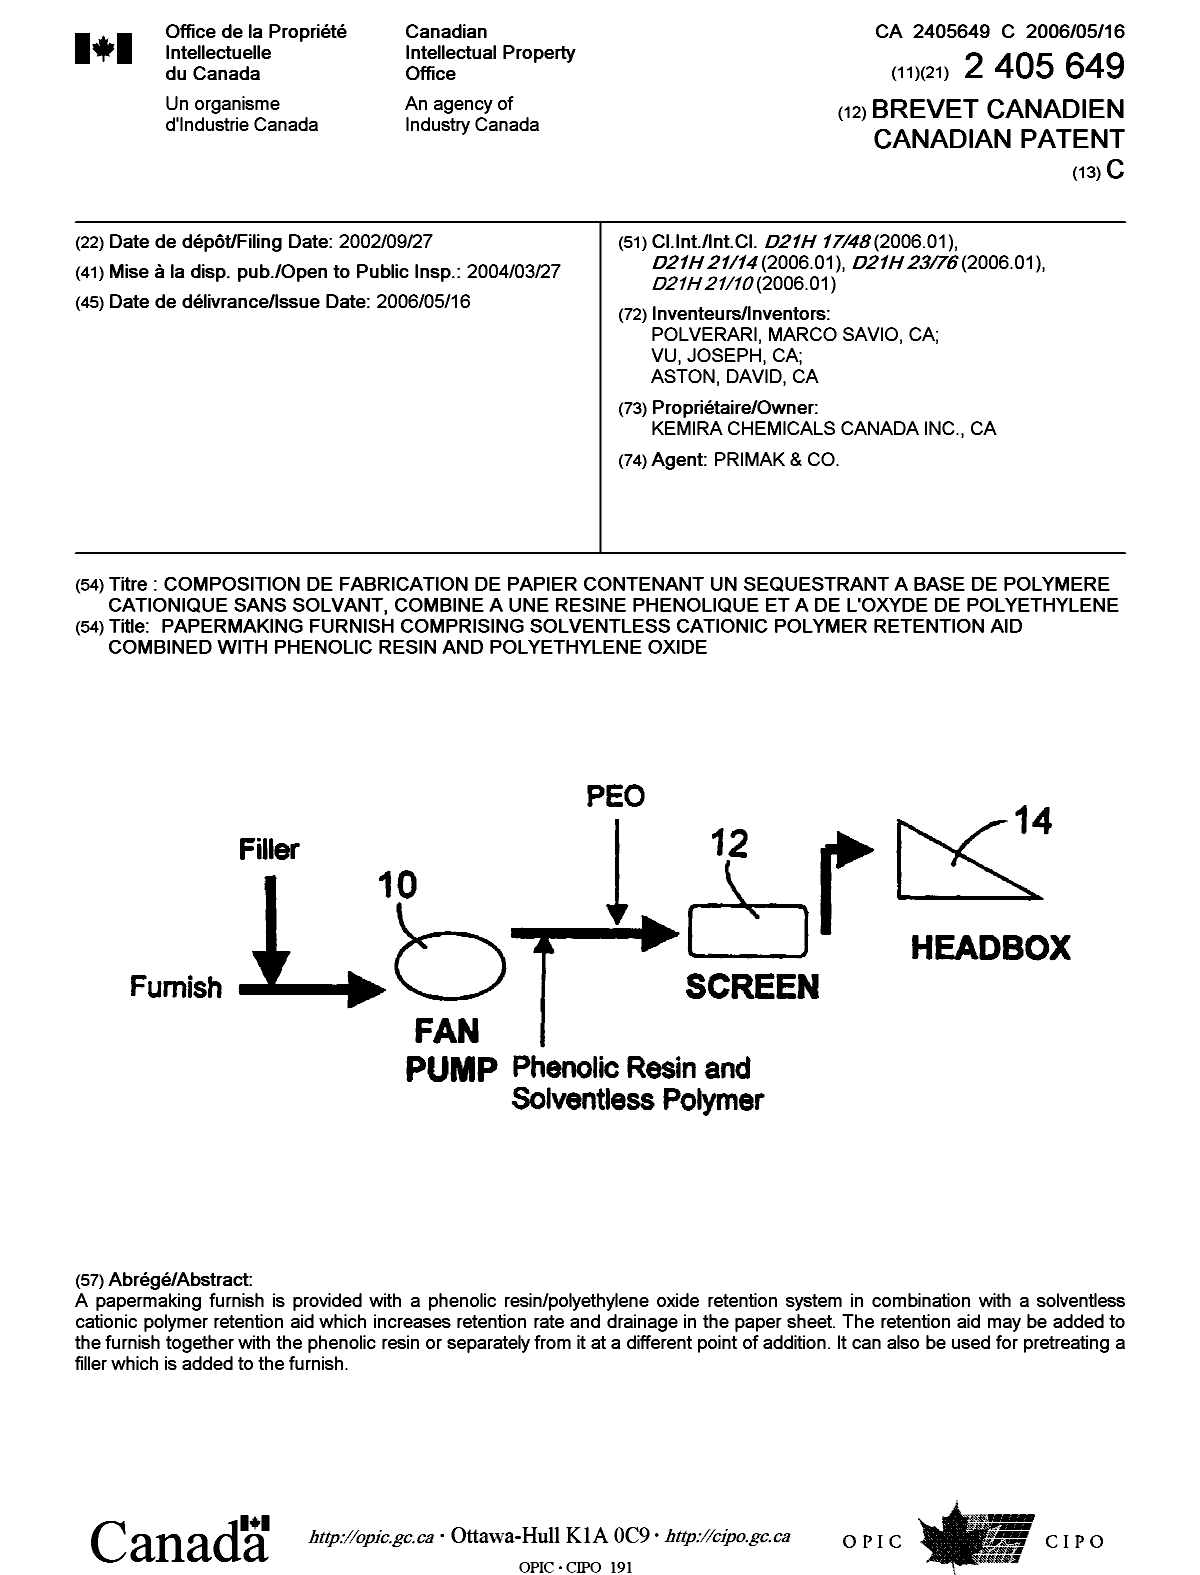 Document de brevet canadien 2405649. Page couverture 20060421. Image 1 de 1